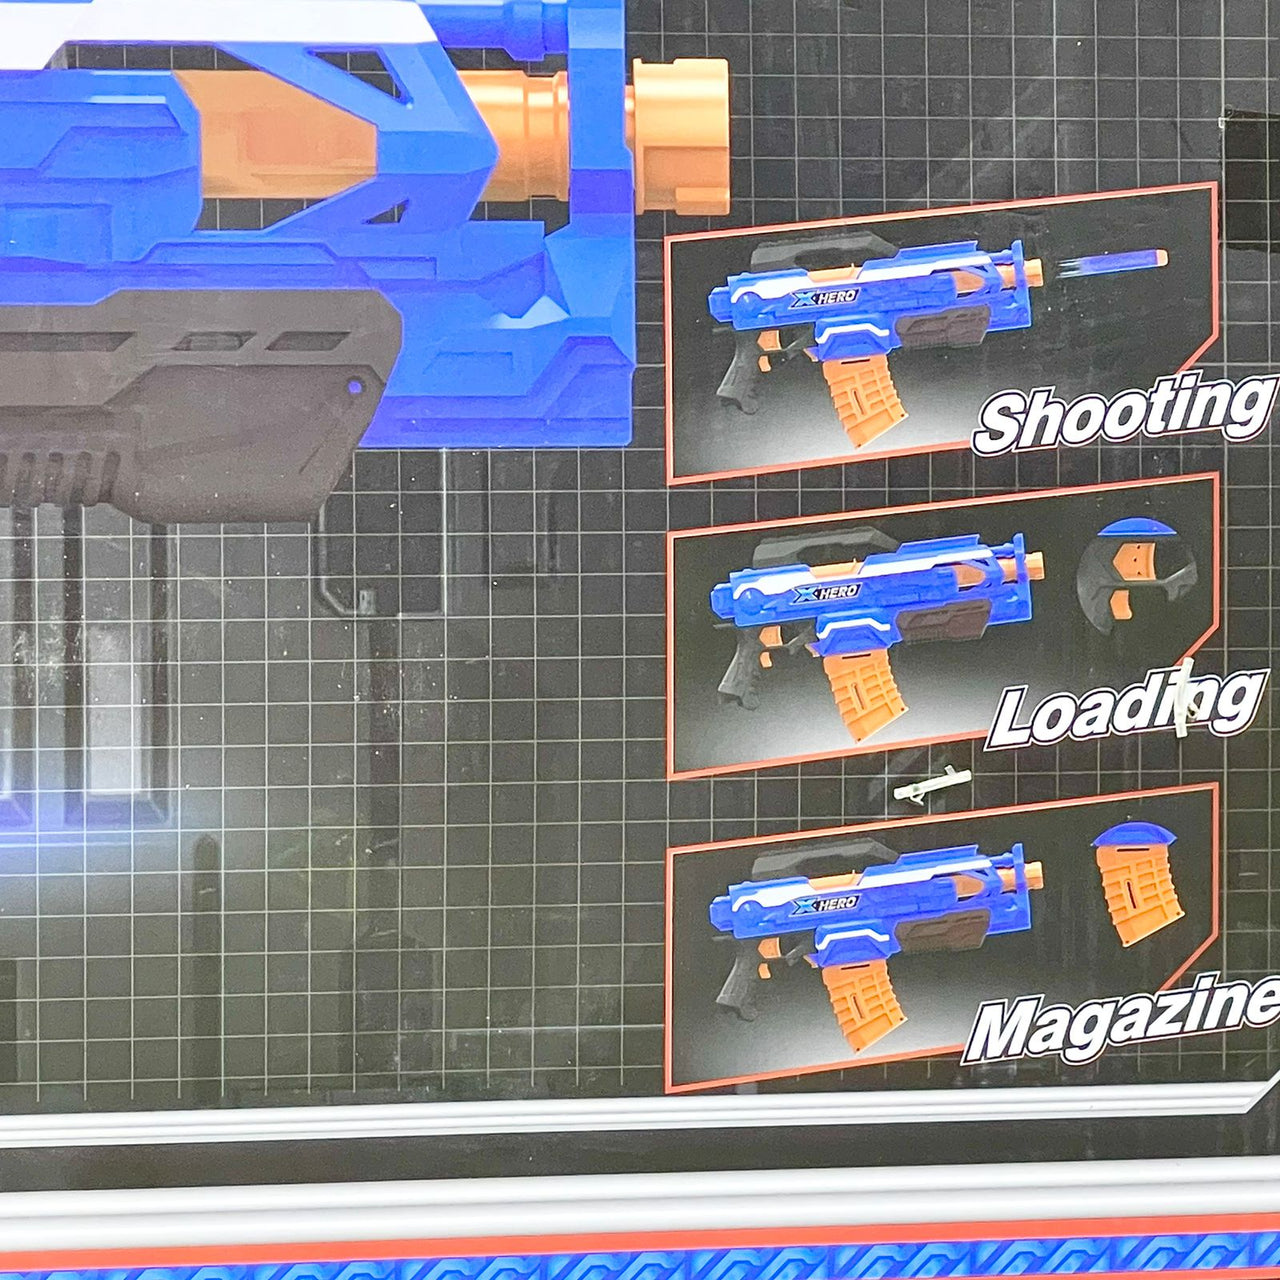 Super Fire Magazine Gun Toy with Soft Darts & Target